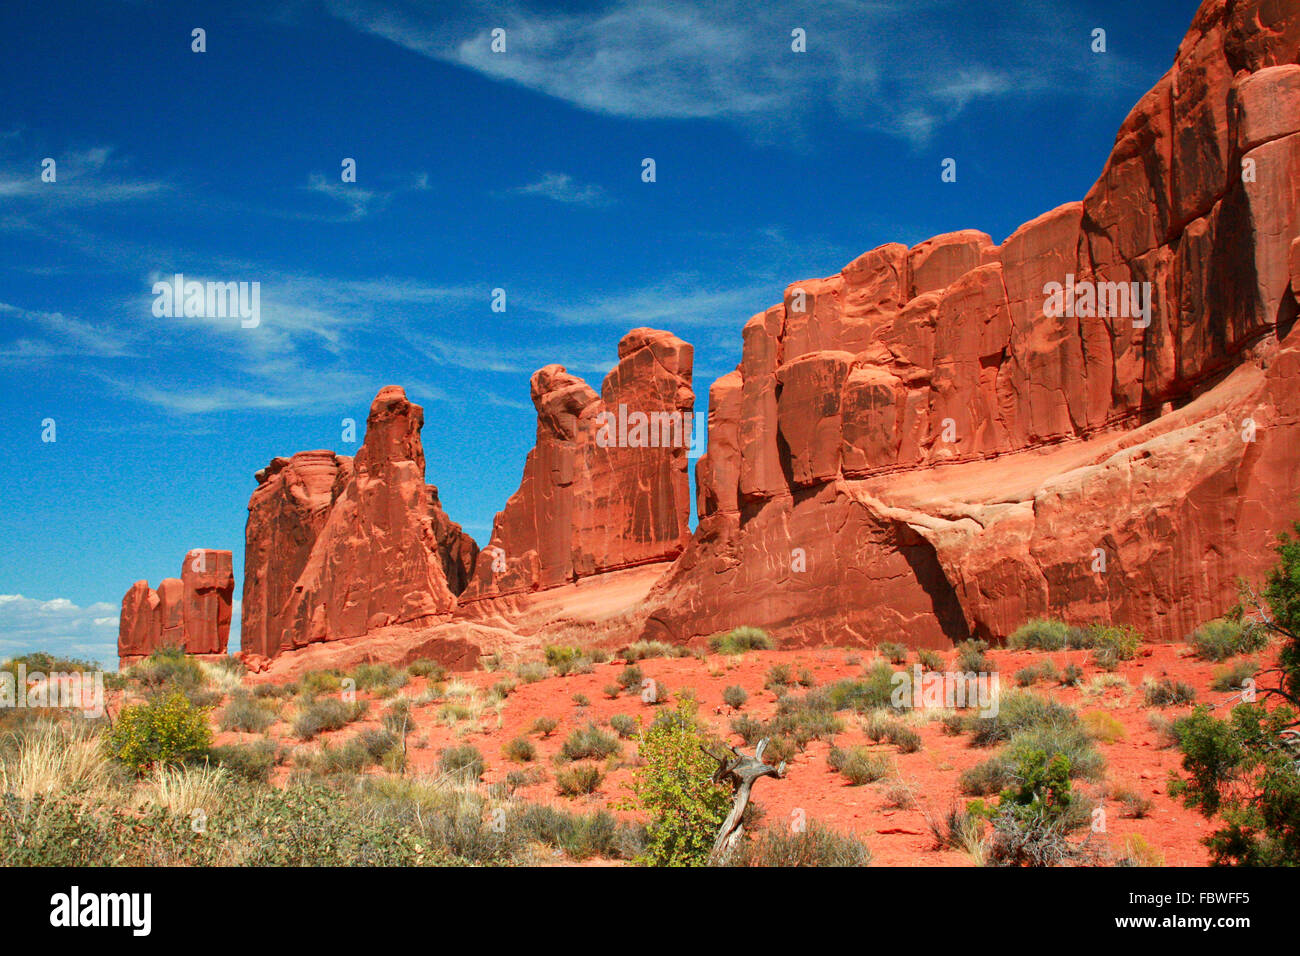 Park Avenue est sculptée dans des formations de roche rouge Entrada Sandstone dans Arches National Park Moab Utah, USA. Banque D'Images